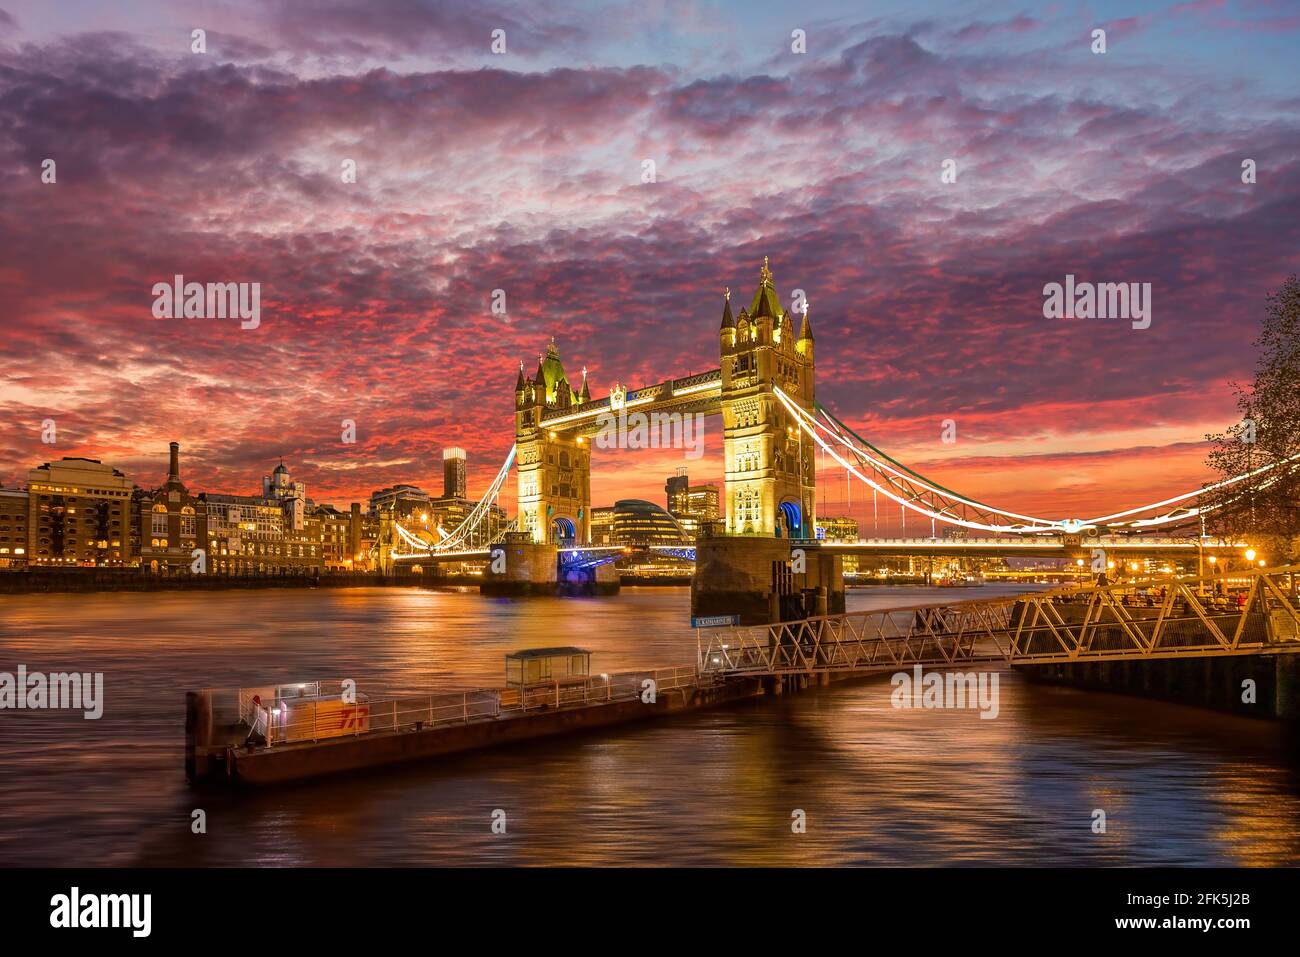 Tower Bridge illuminated at dusk, London, England Stock Photo